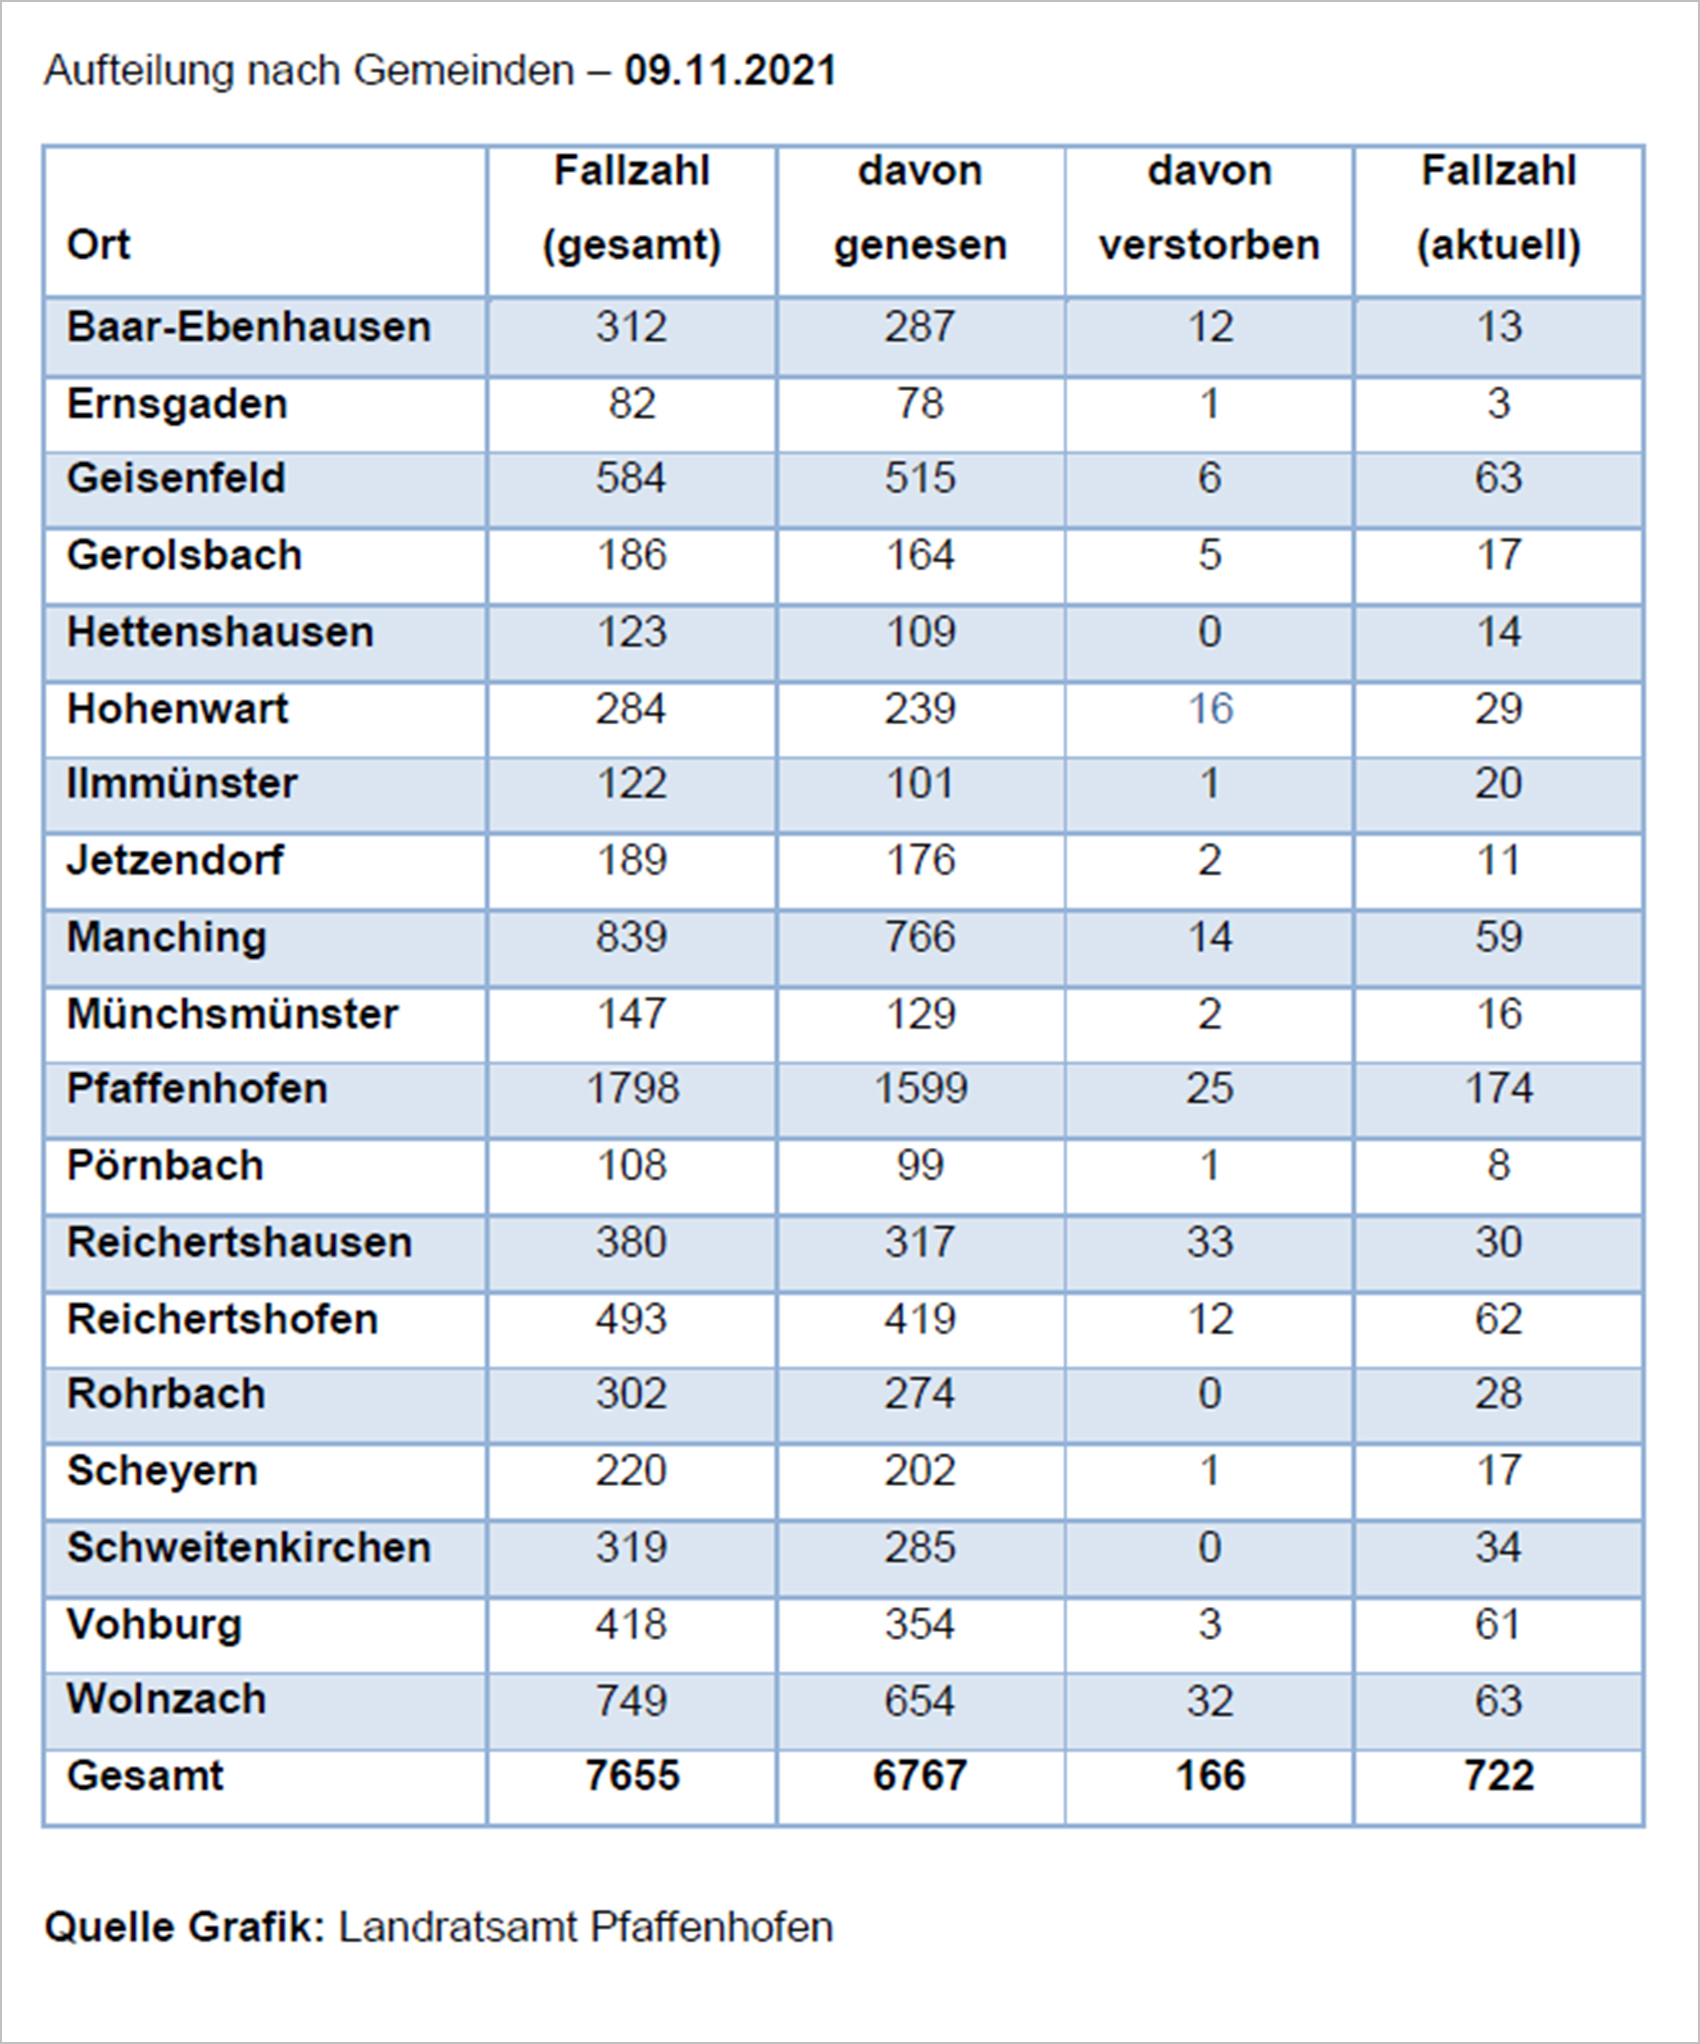 Verteilung der Fallzahlen auf die Landkreisgemeinden - 09.11.2021